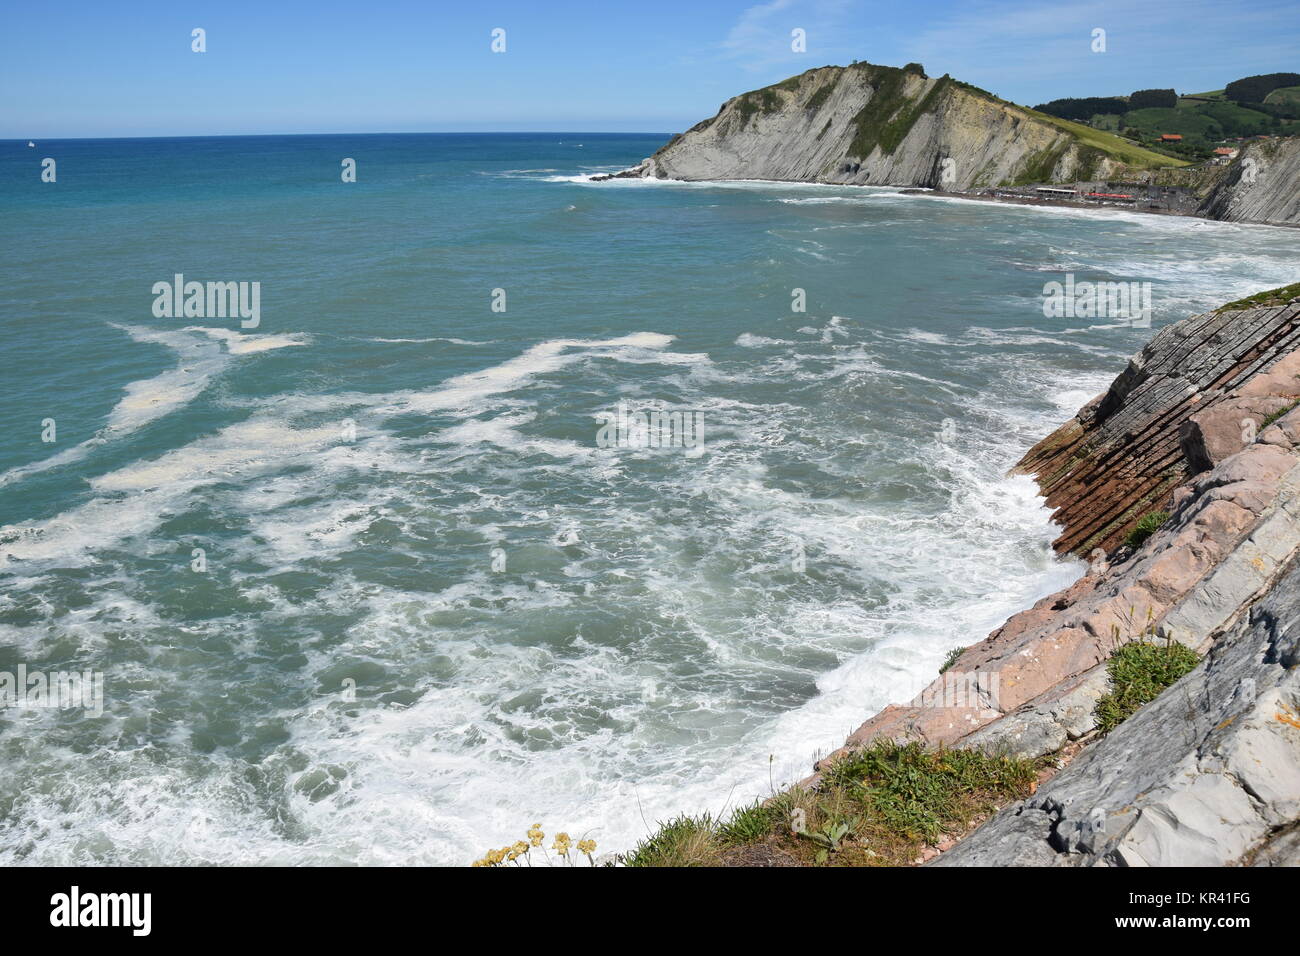 basque rocky coast Stock Photo